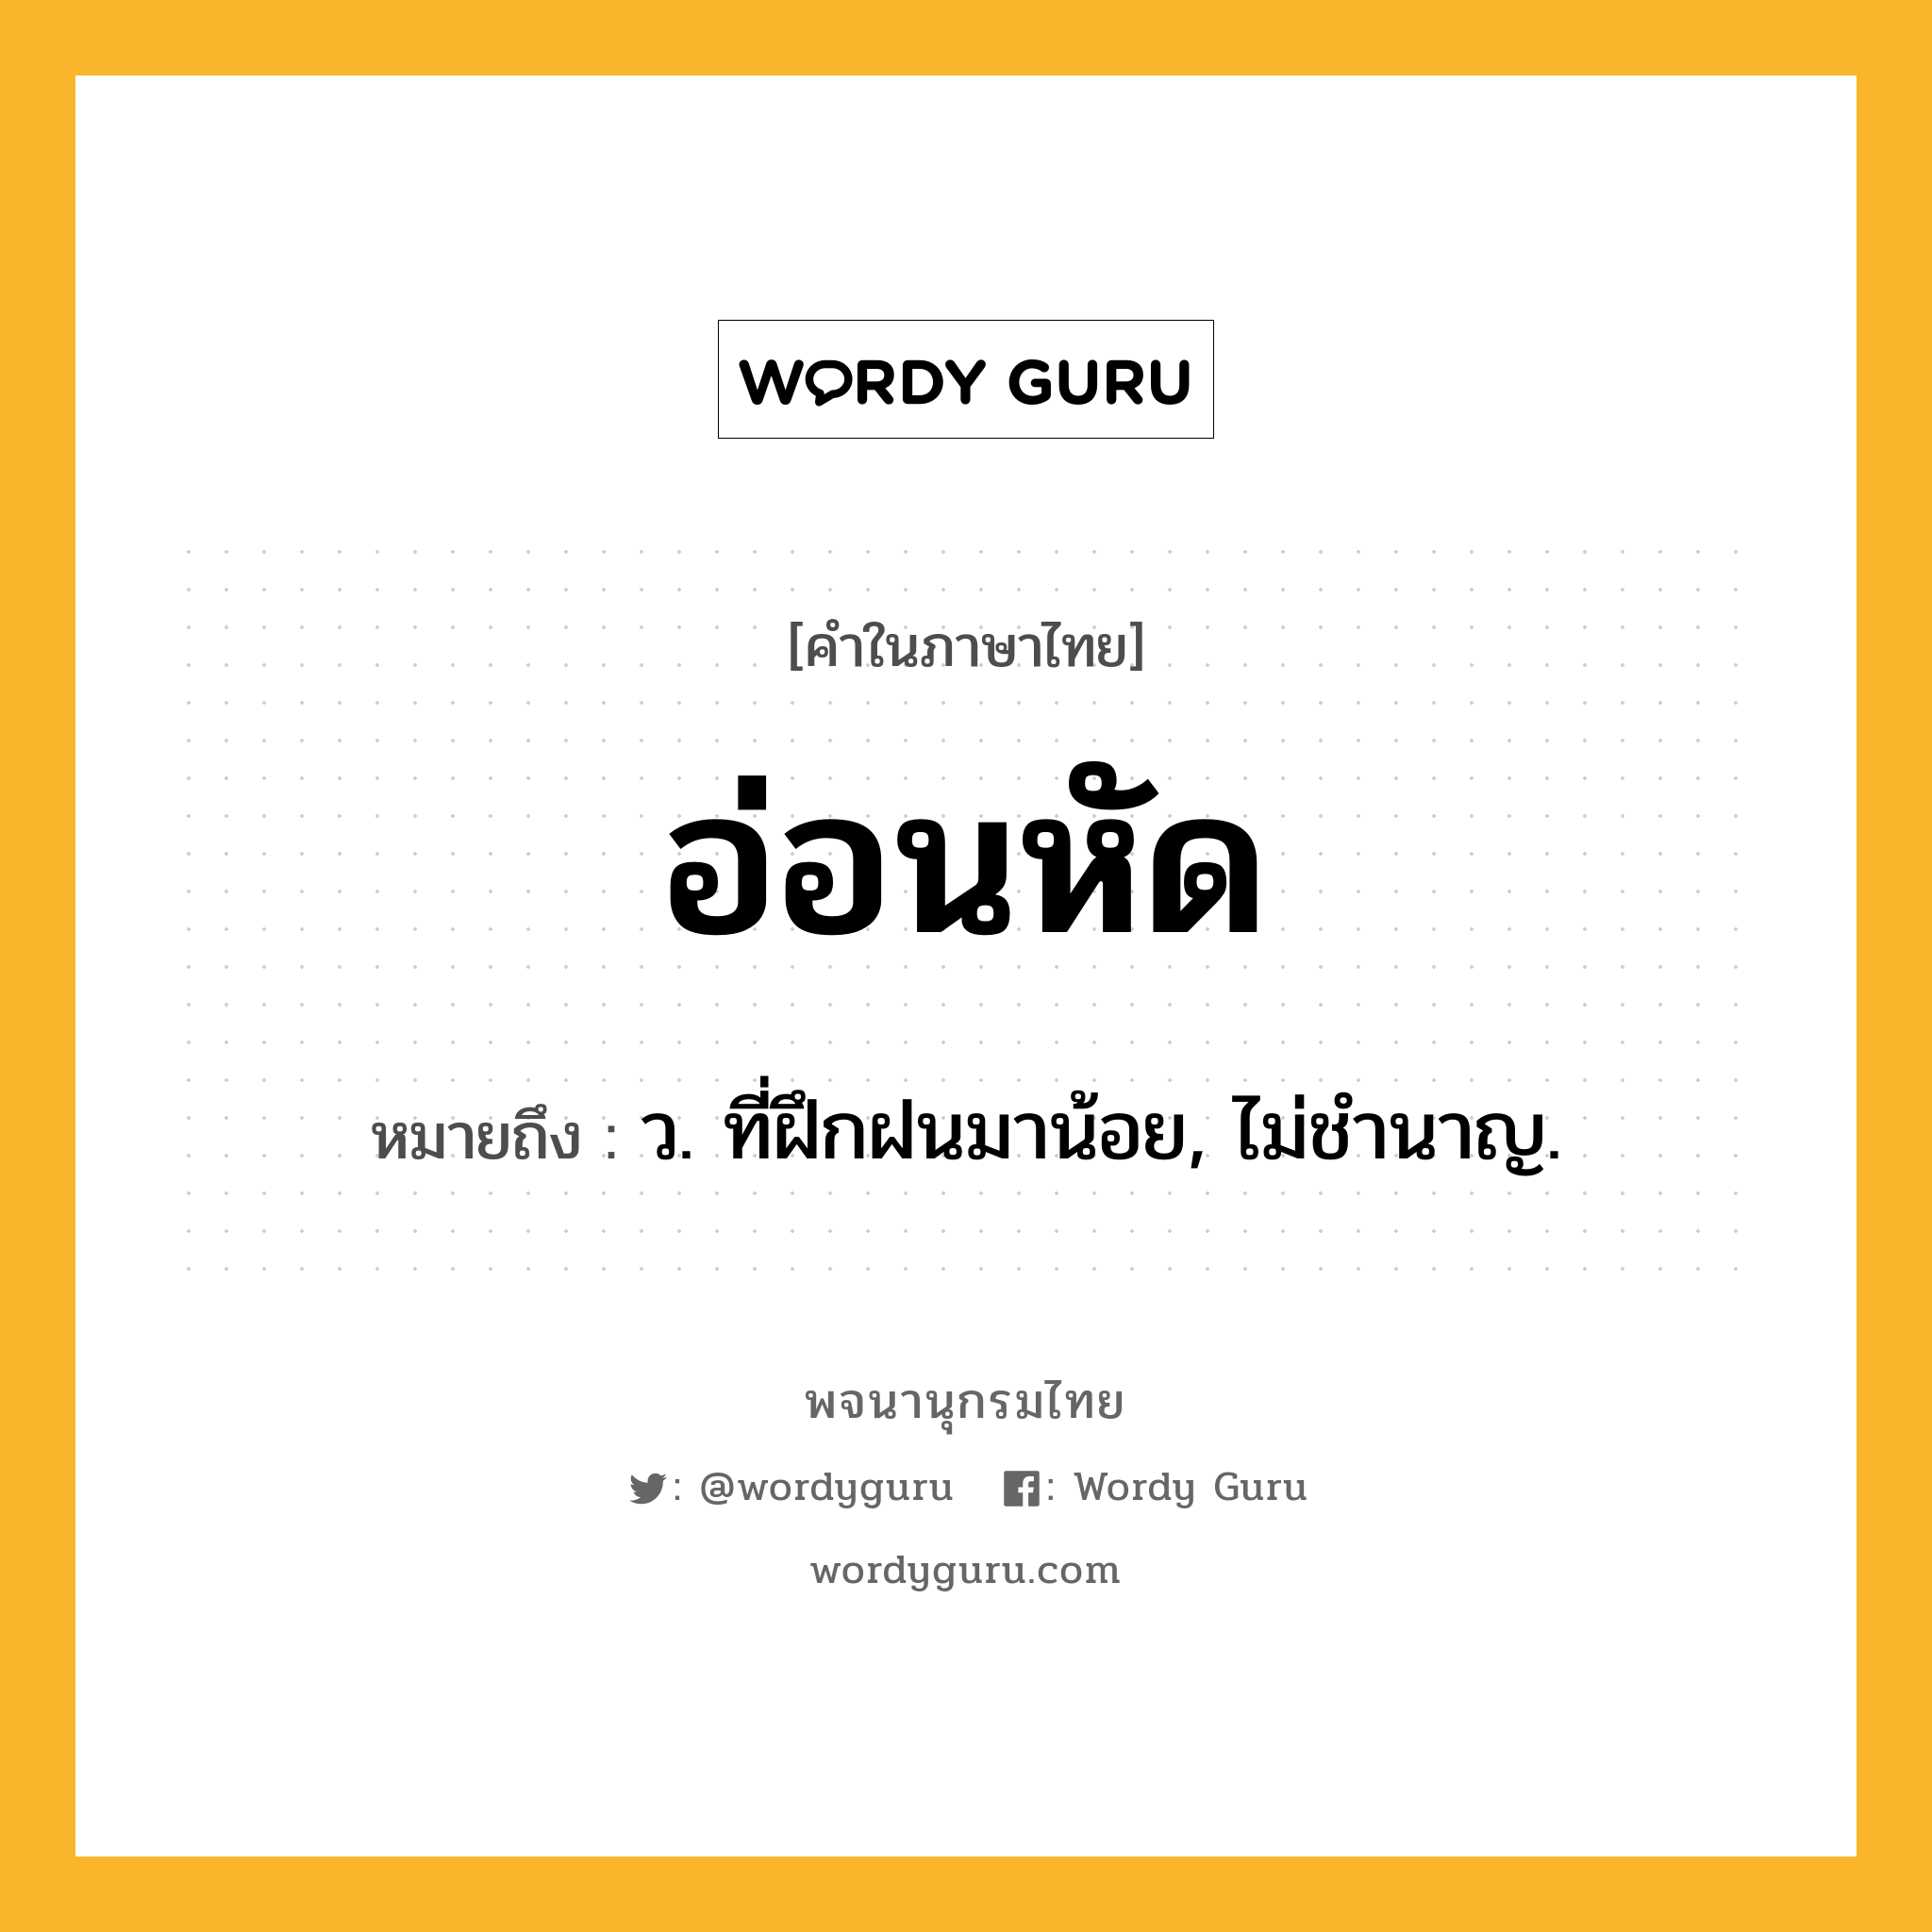 อ่อนหัด หมายถึงอะไร?, คำในภาษาไทย อ่อนหัด หมายถึง ว. ที่ฝึกฝนมาน้อย, ไม่ชํานาญ.